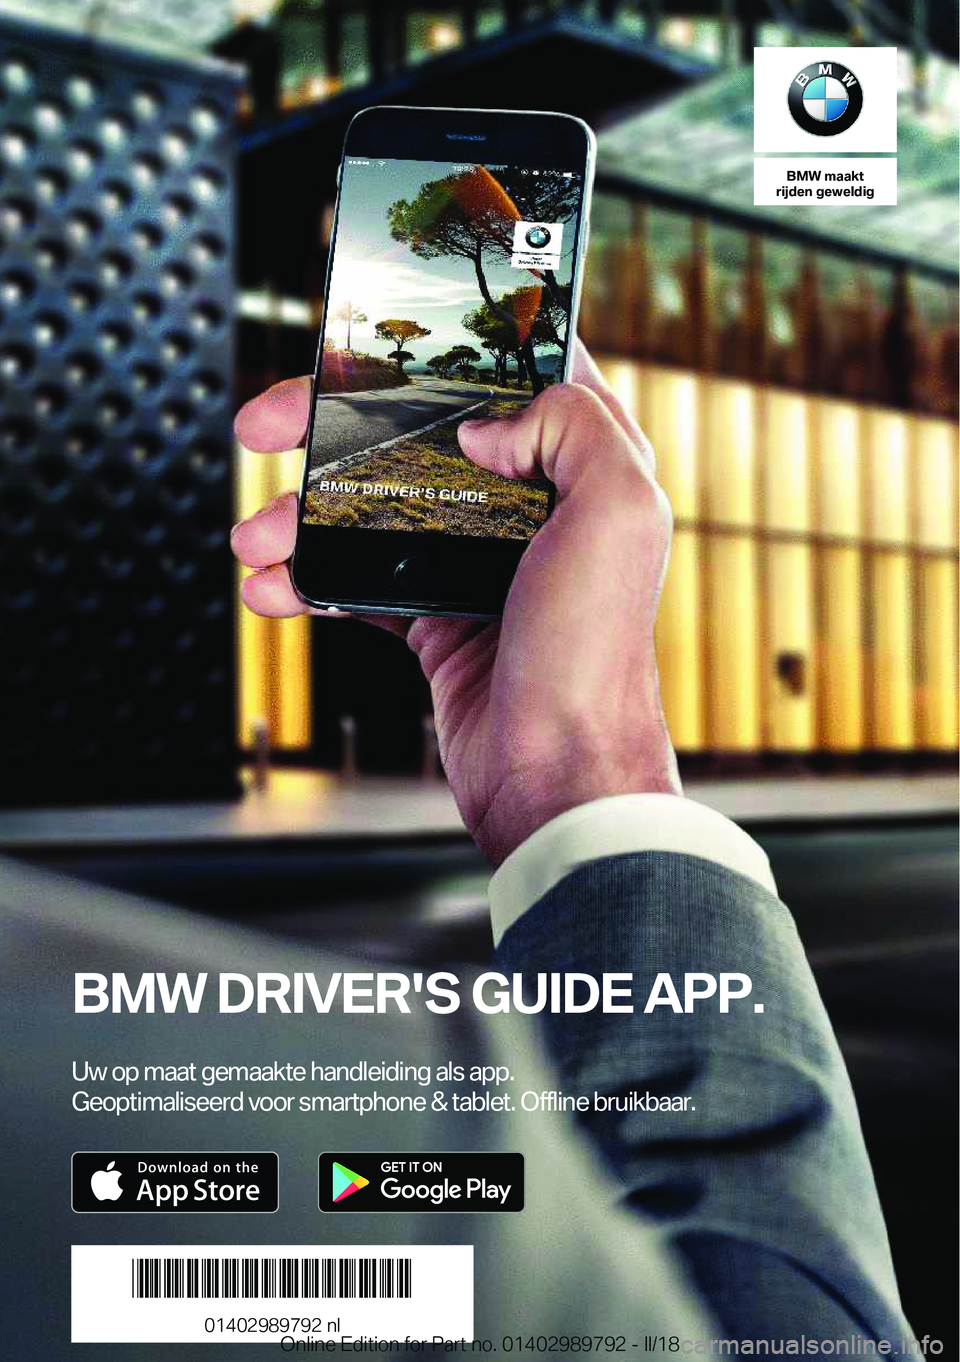 BMW M5 2018  Instructieboekjes (in Dutch) �B�M�W��m�a�a�k�t
�r�i�j�d�e�n��g�e�w�e�l�d�i�g
�B�M�W��D�R�I�V�E�R�'�S��G�U�I�D�E��A�P�P�.
�U�w��o�p��m�a�a�t��g�e�m�a�a�k�t�e��h�a�n�d�l�e�i�d�i�n�g��a�l�s��a�p�p�.�G�e�o�p�t�i�m�a�l�